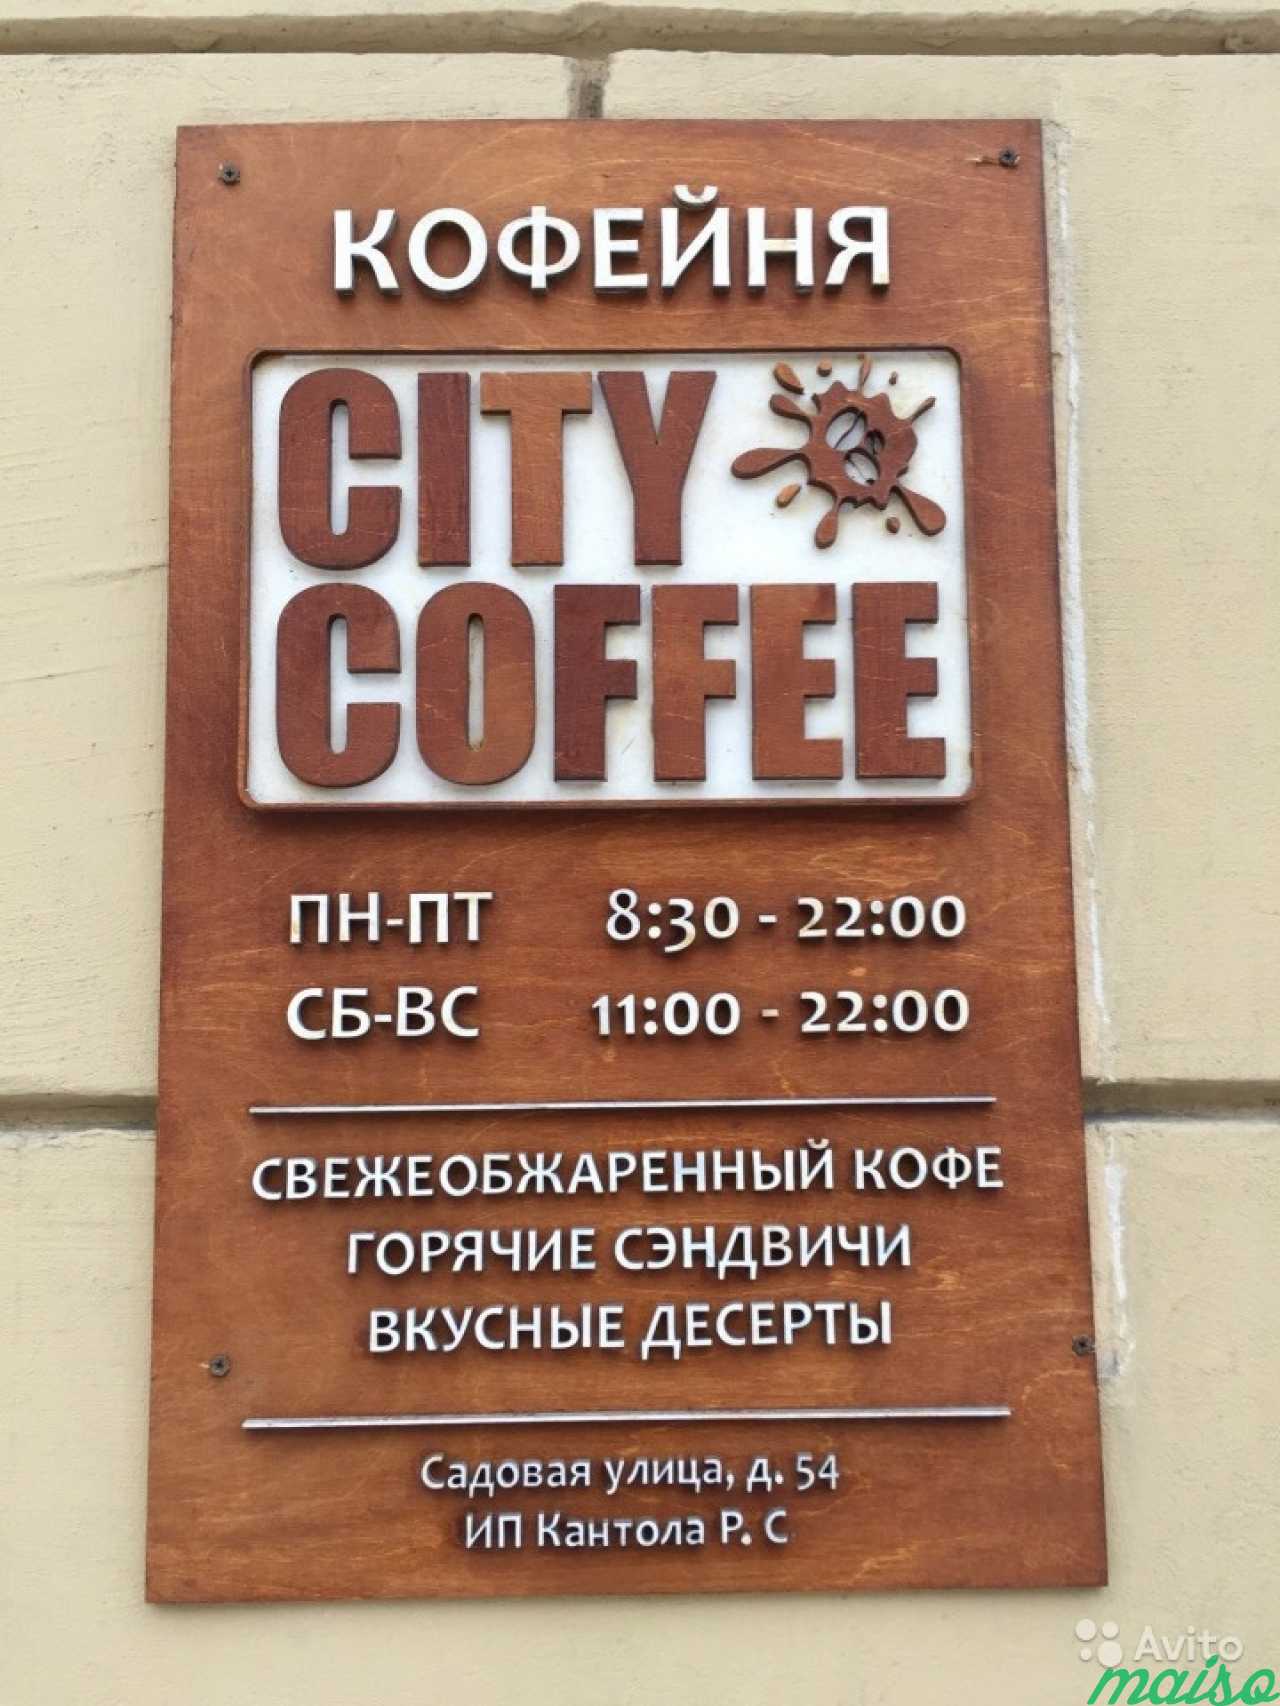 Логотипы, надписи, вывески из фанеры в Санкт-Петербурге. Фото 4